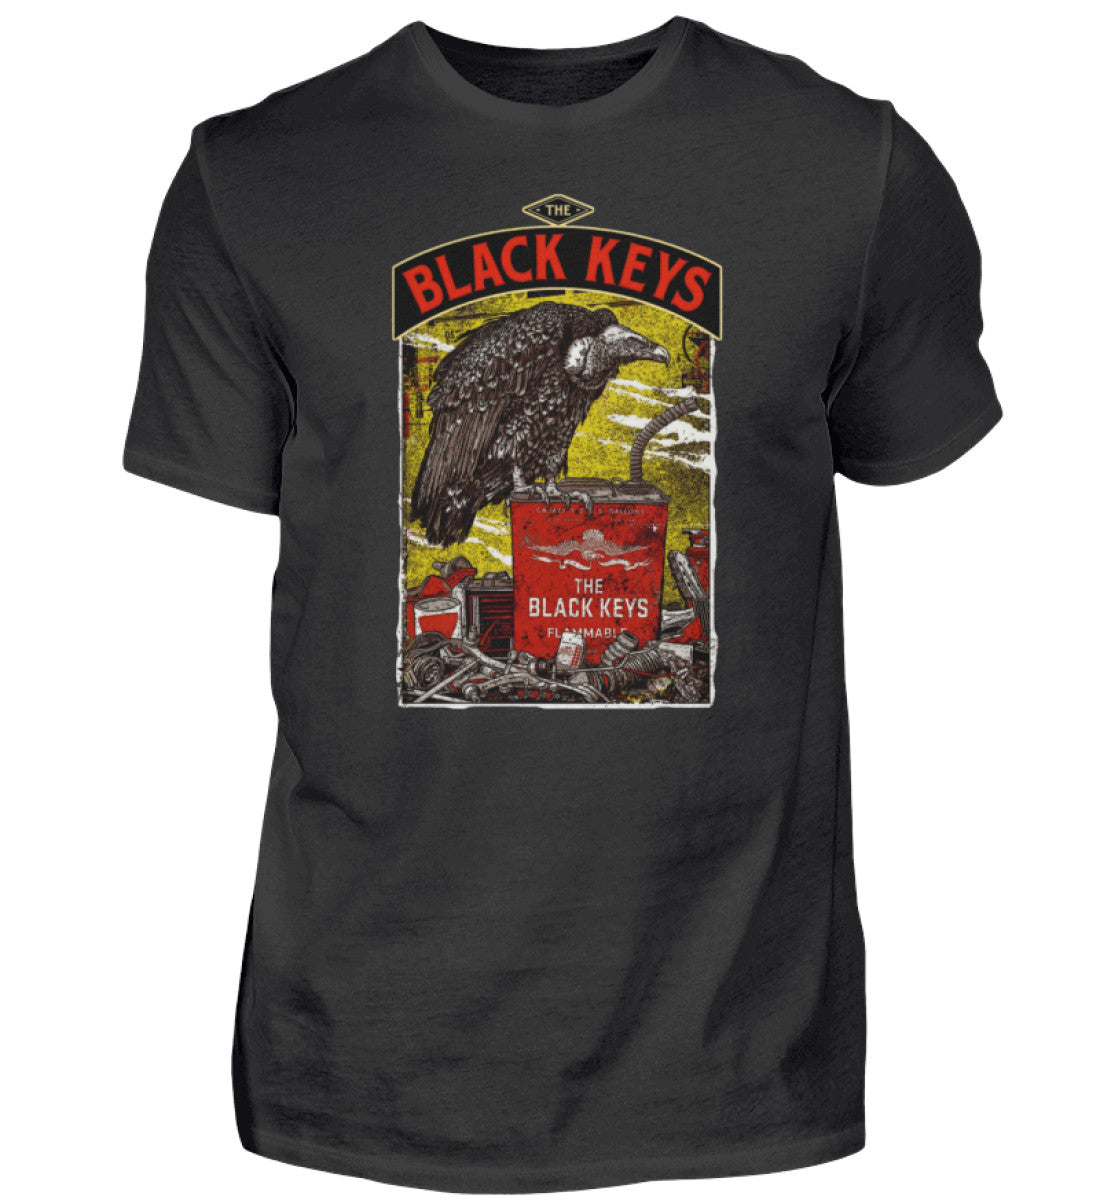 The Black Keys T-Shirt Men